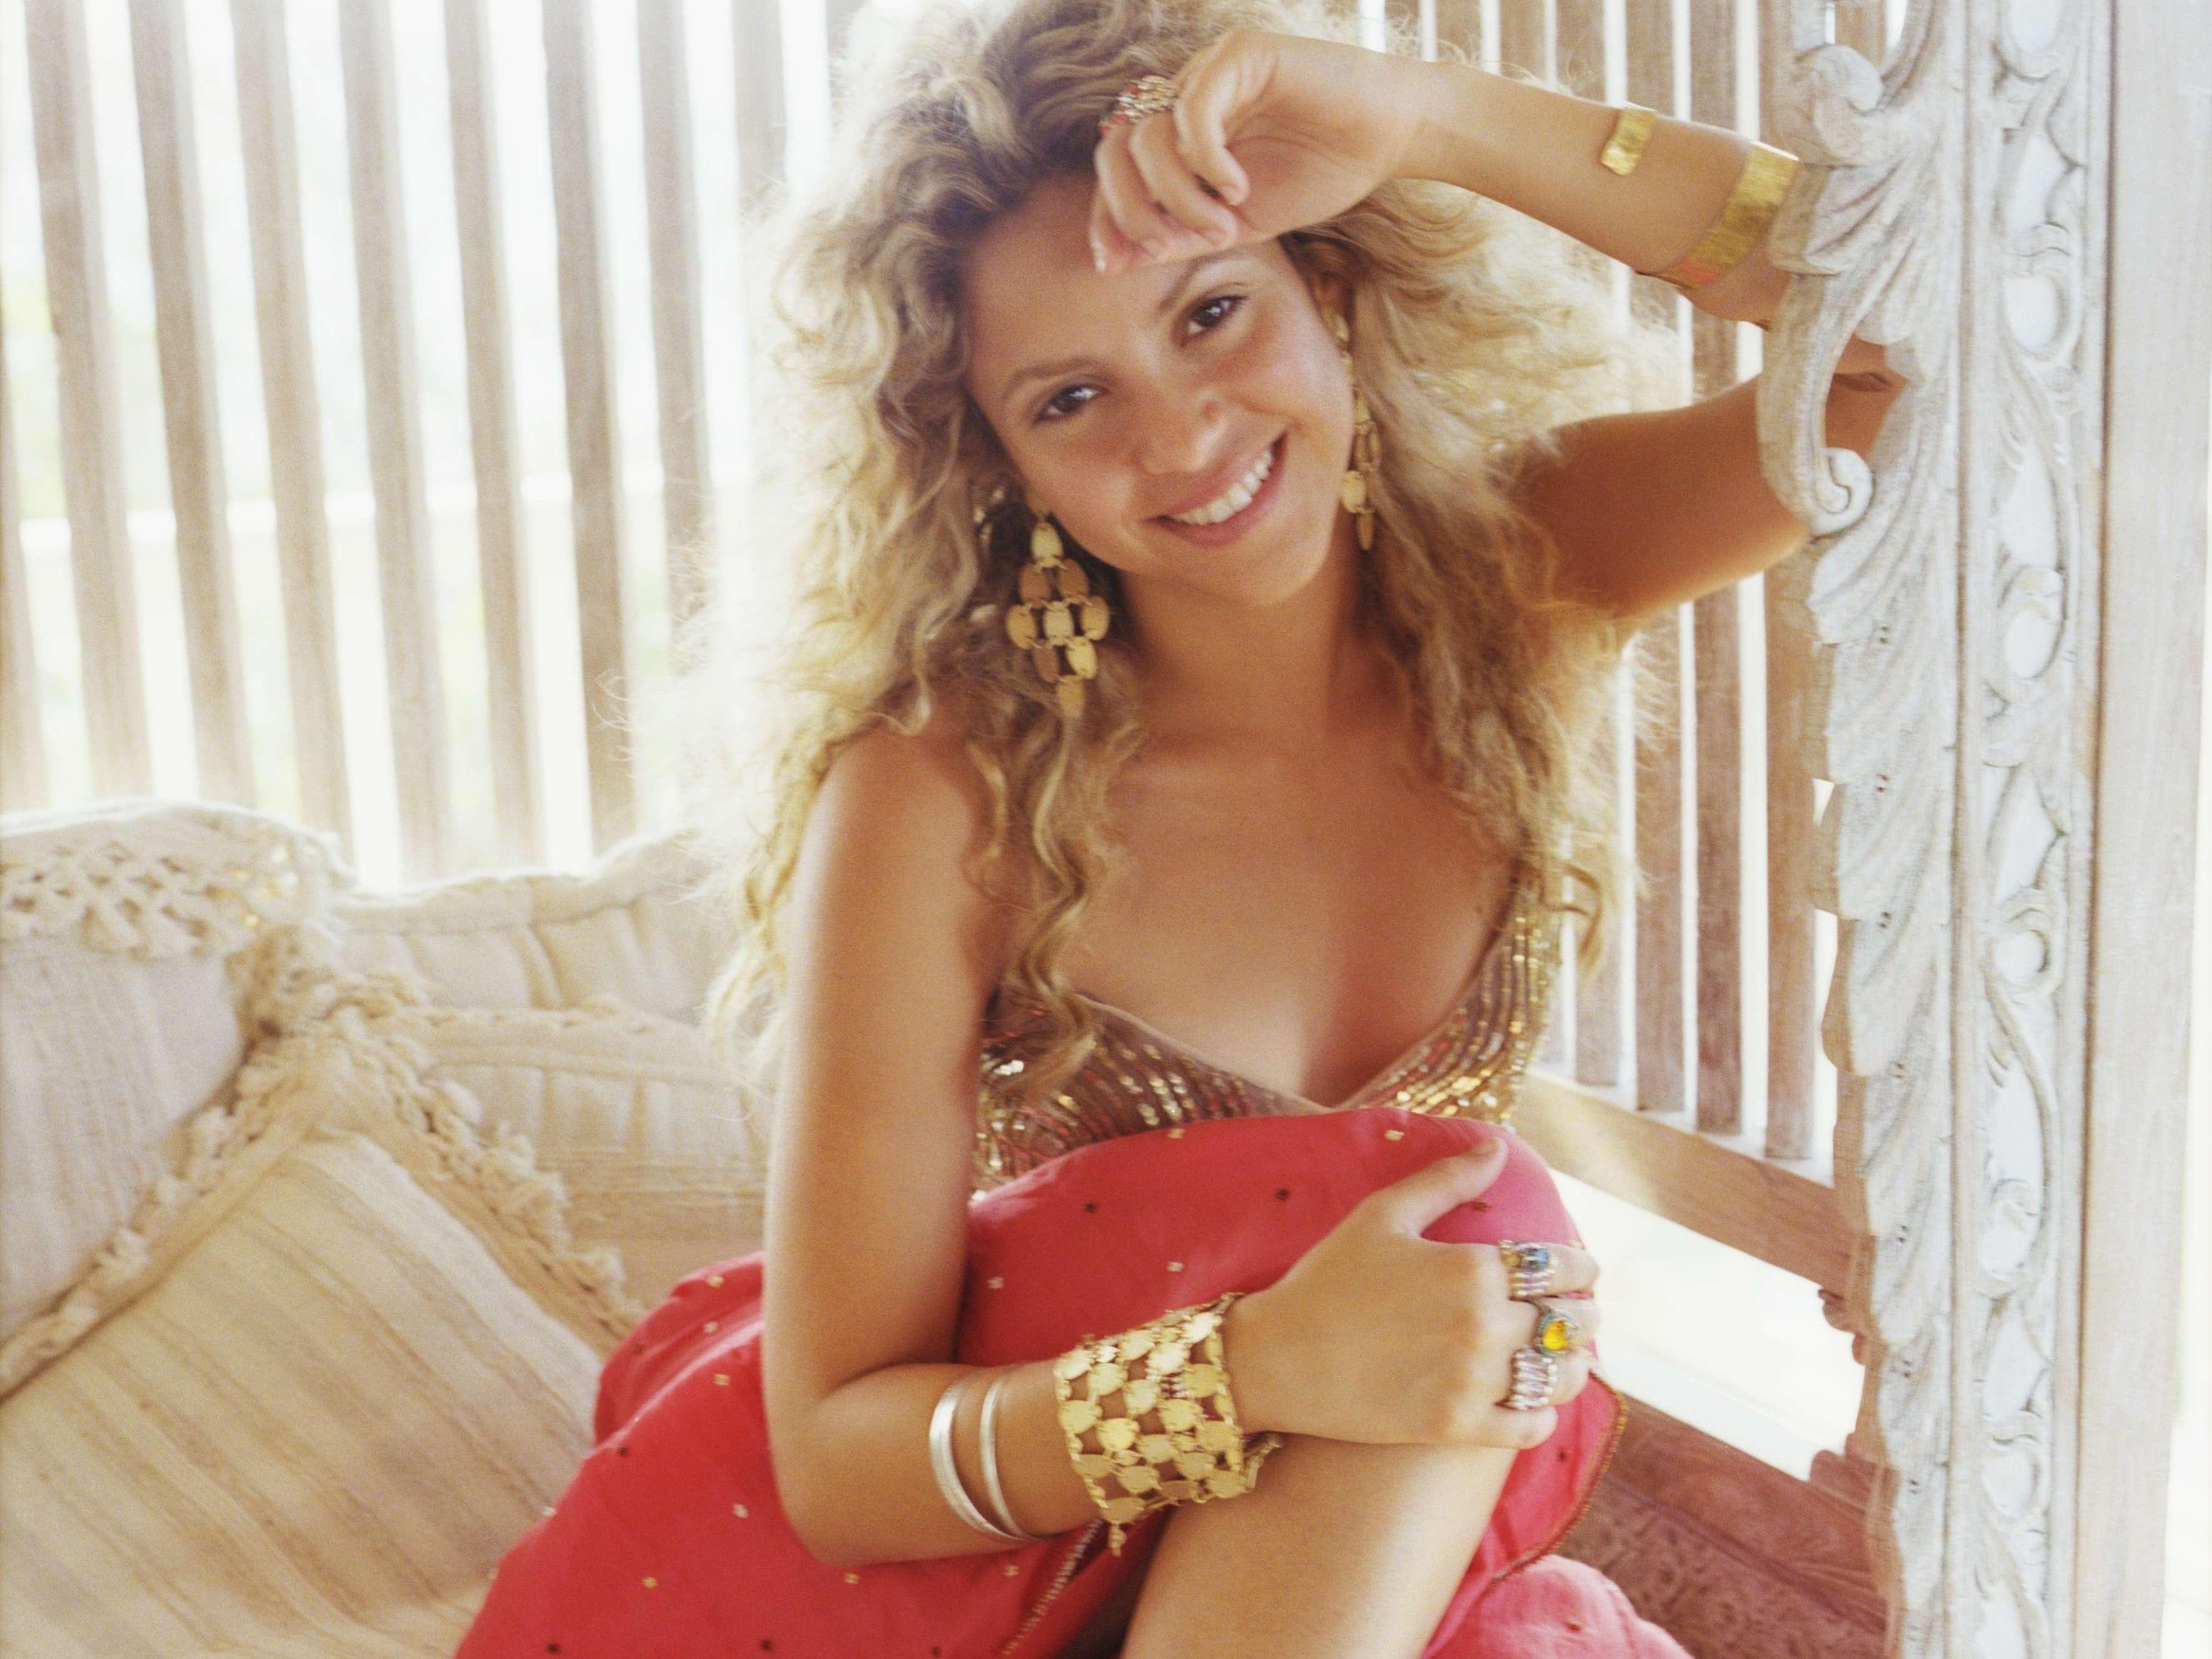 Music Shakira HD Wallpaper | Background Image